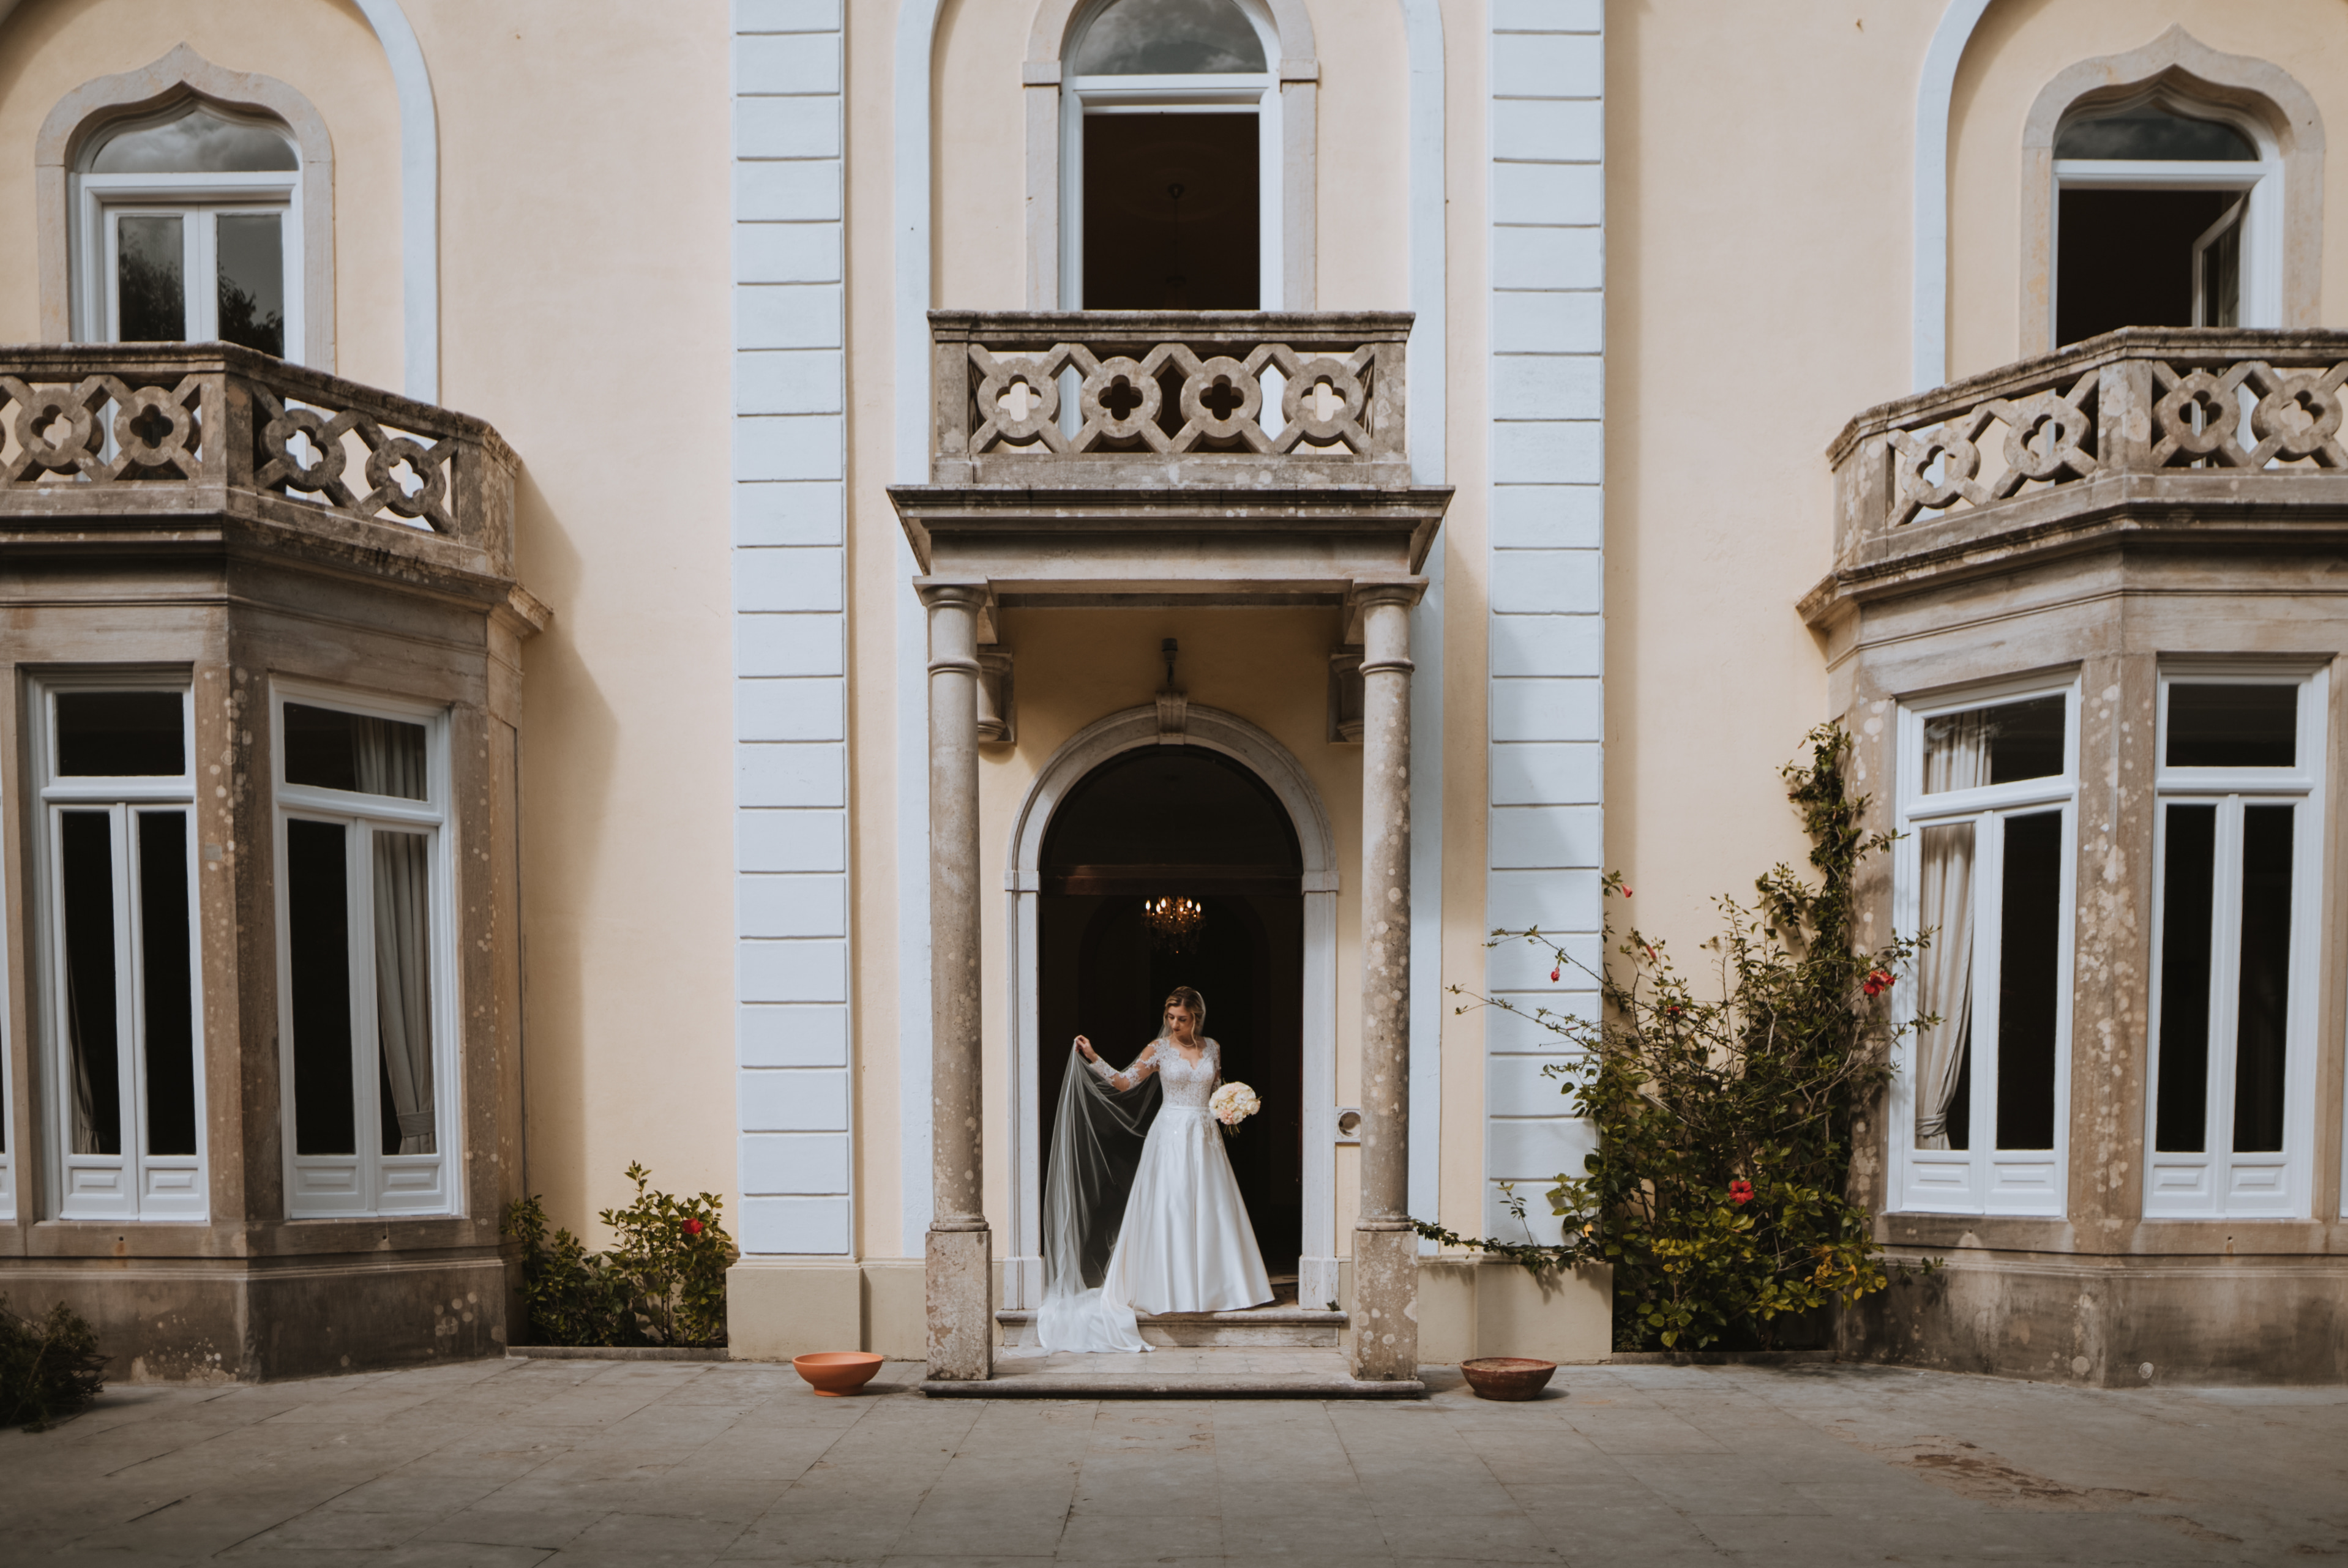 Wedding Planner, Decoração e Mobiliário: Fashion Moments. Espaço: Camélia Gardens. Fotografia: Memorelle Weddings 